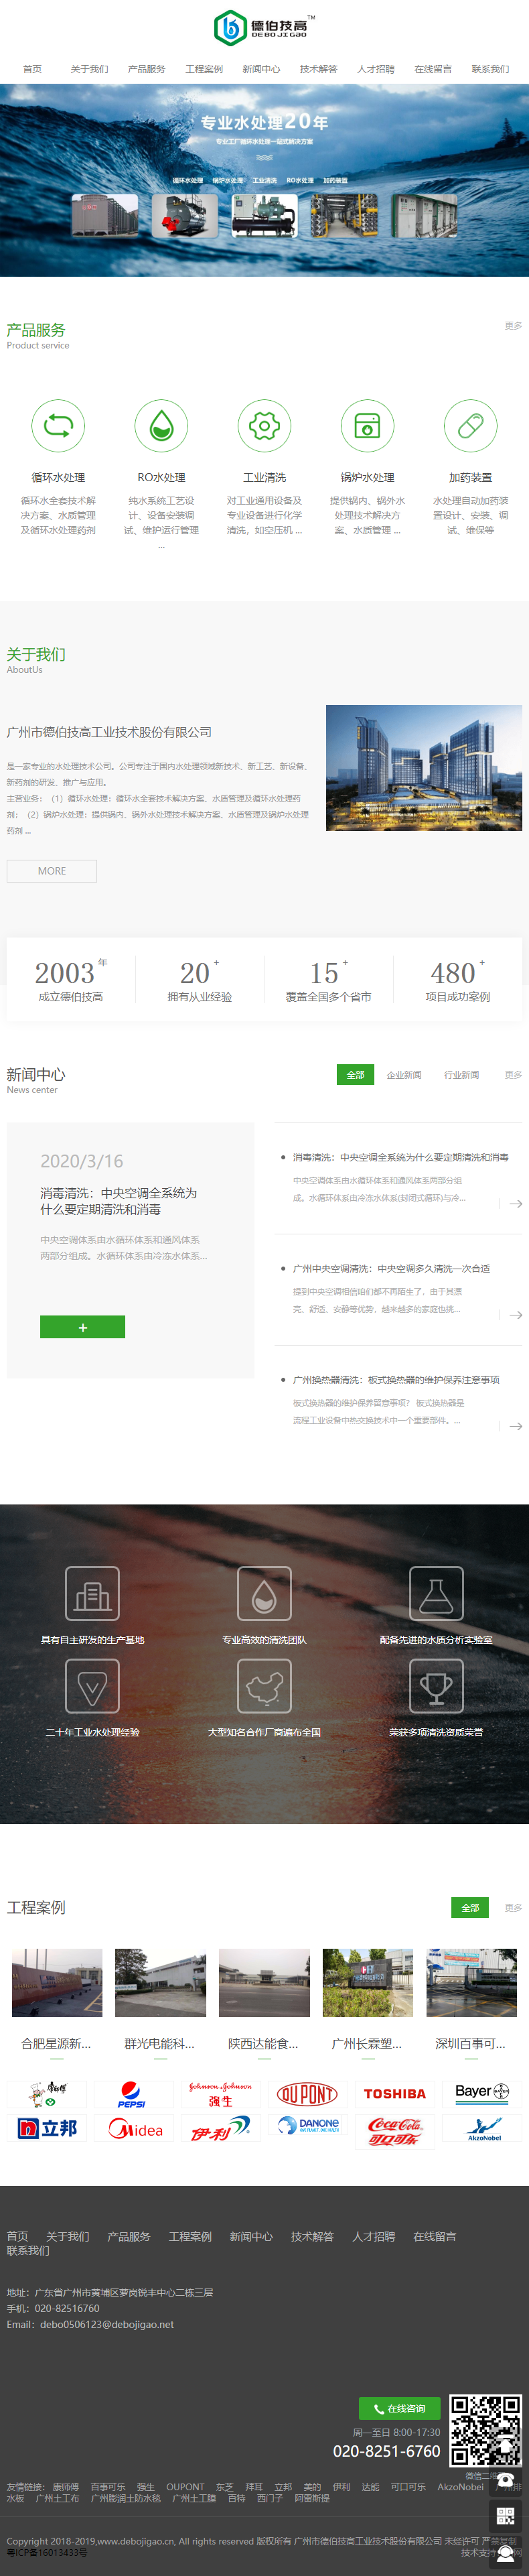 广州市德伯技高工业技术股份有限公司网站案例